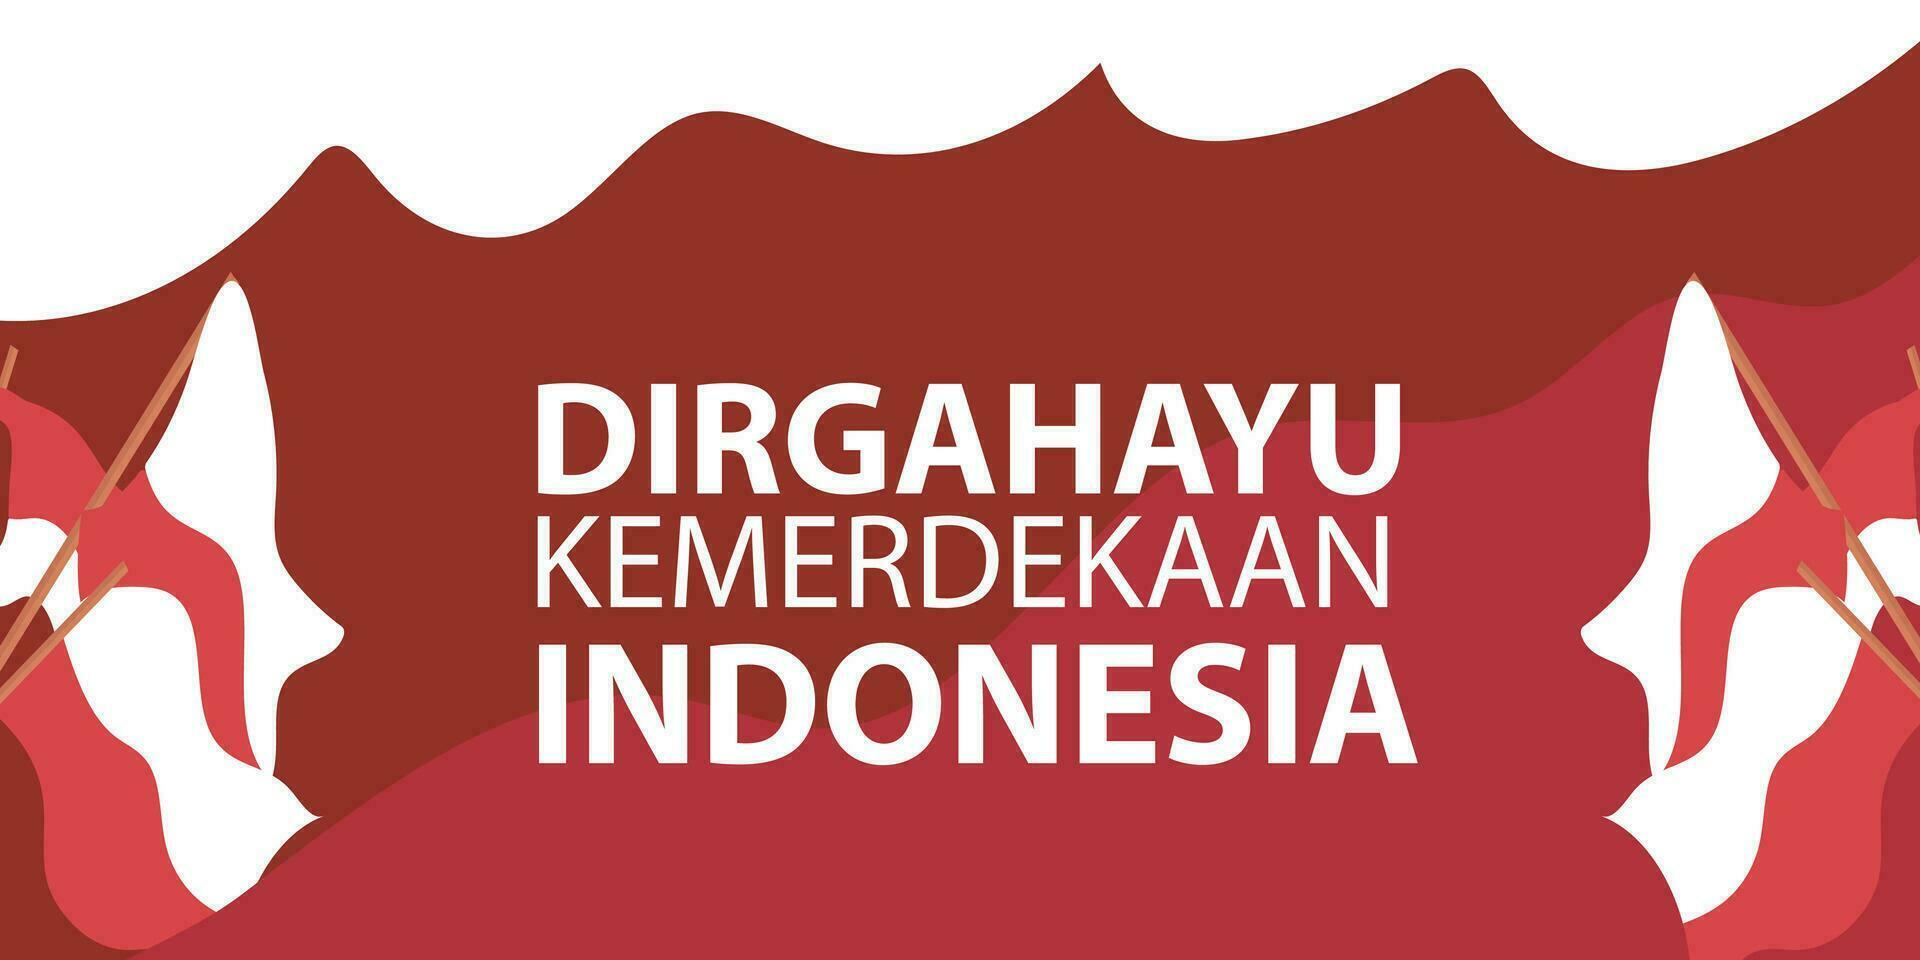 vector Indonesia independiente día 17 agosto celebracion